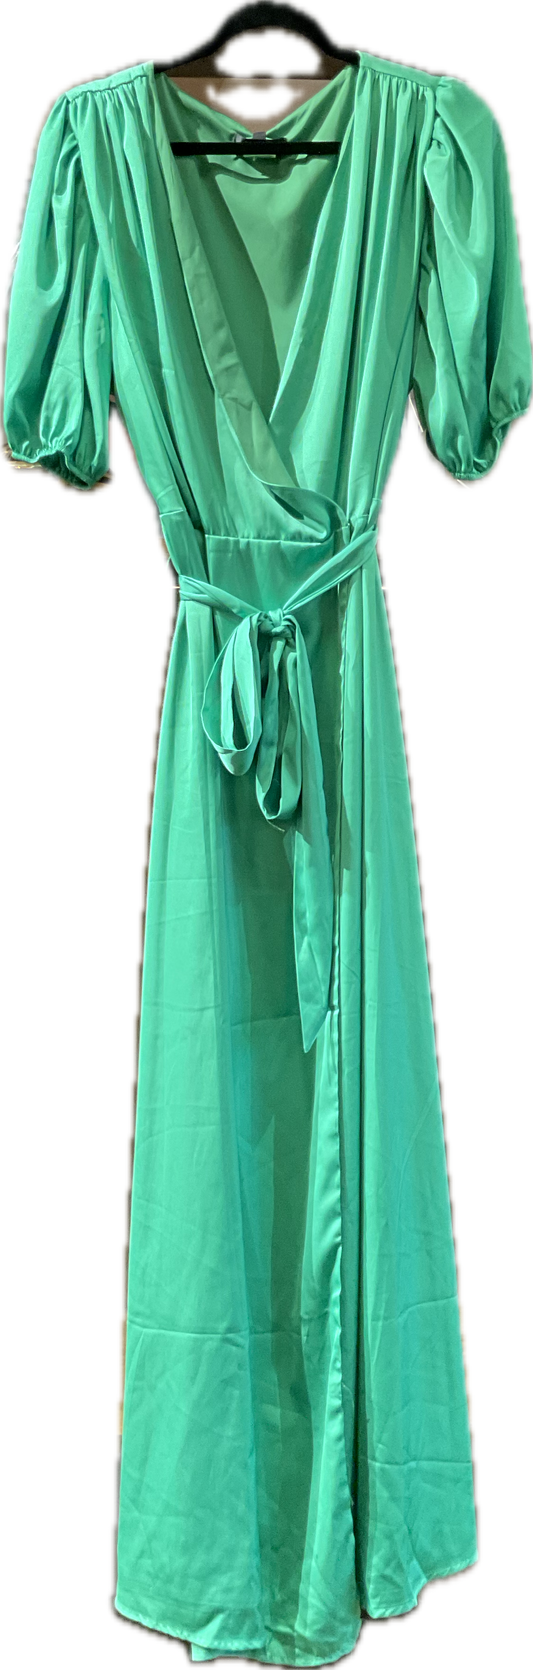 Alexia Admore Green Satin Wrap Dress